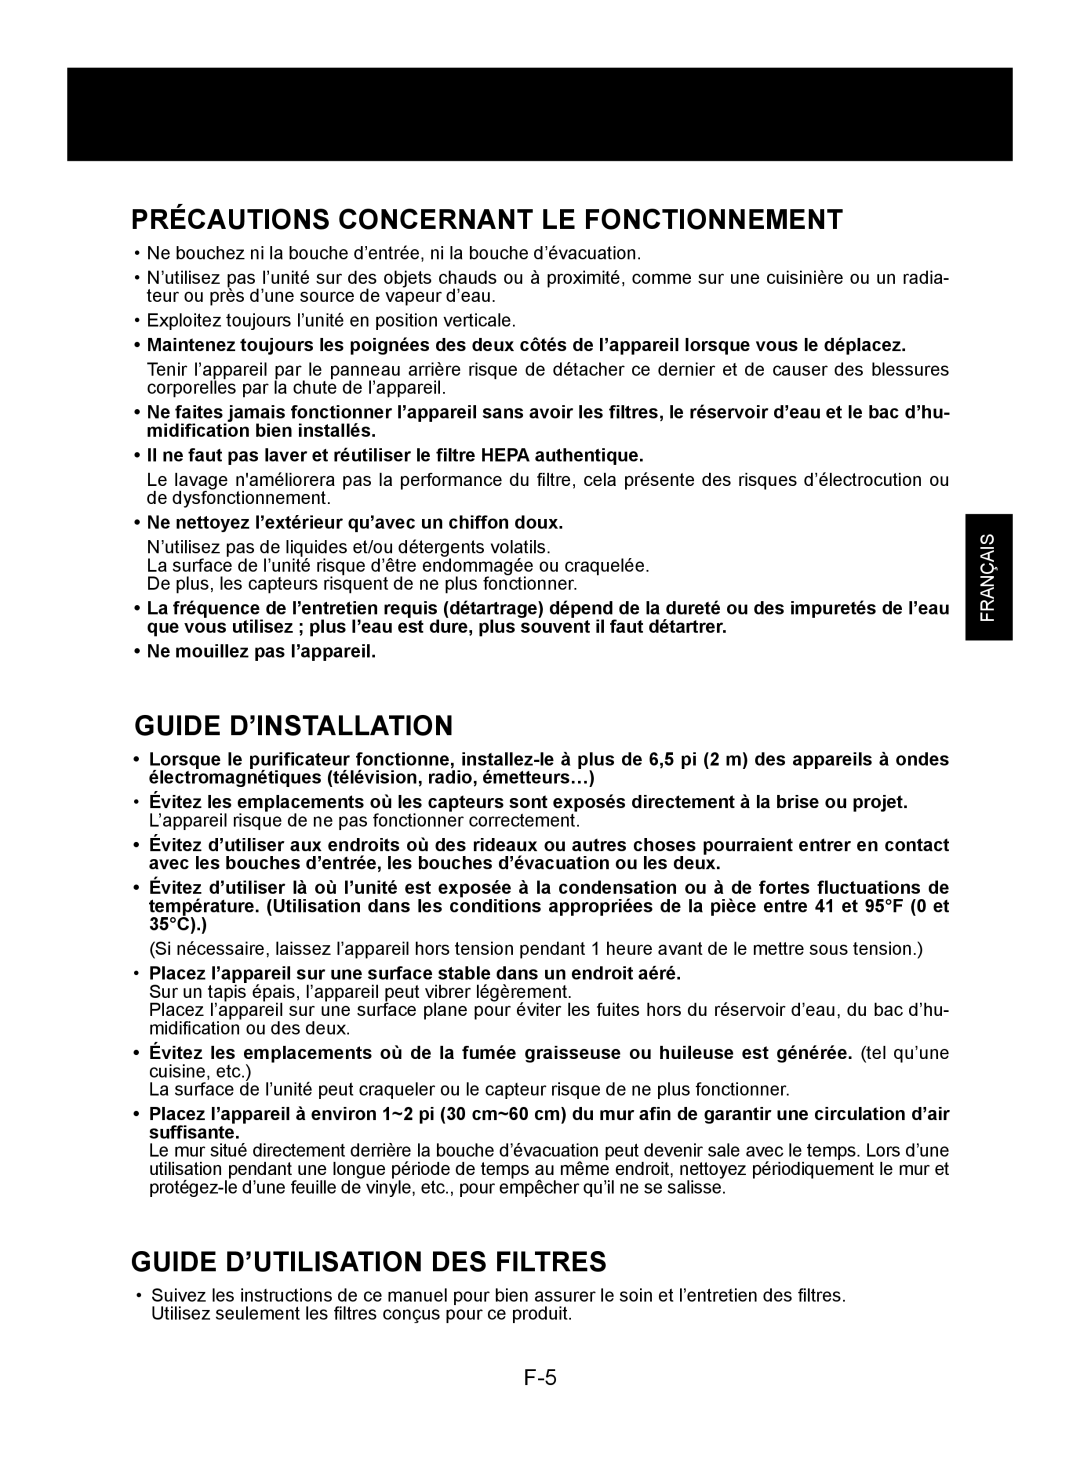 Sharp KC-850U Précautions Concernant Le Fonctionnement, Guide D’Installation, Guide D’Utilisation Des Filtres, Français 